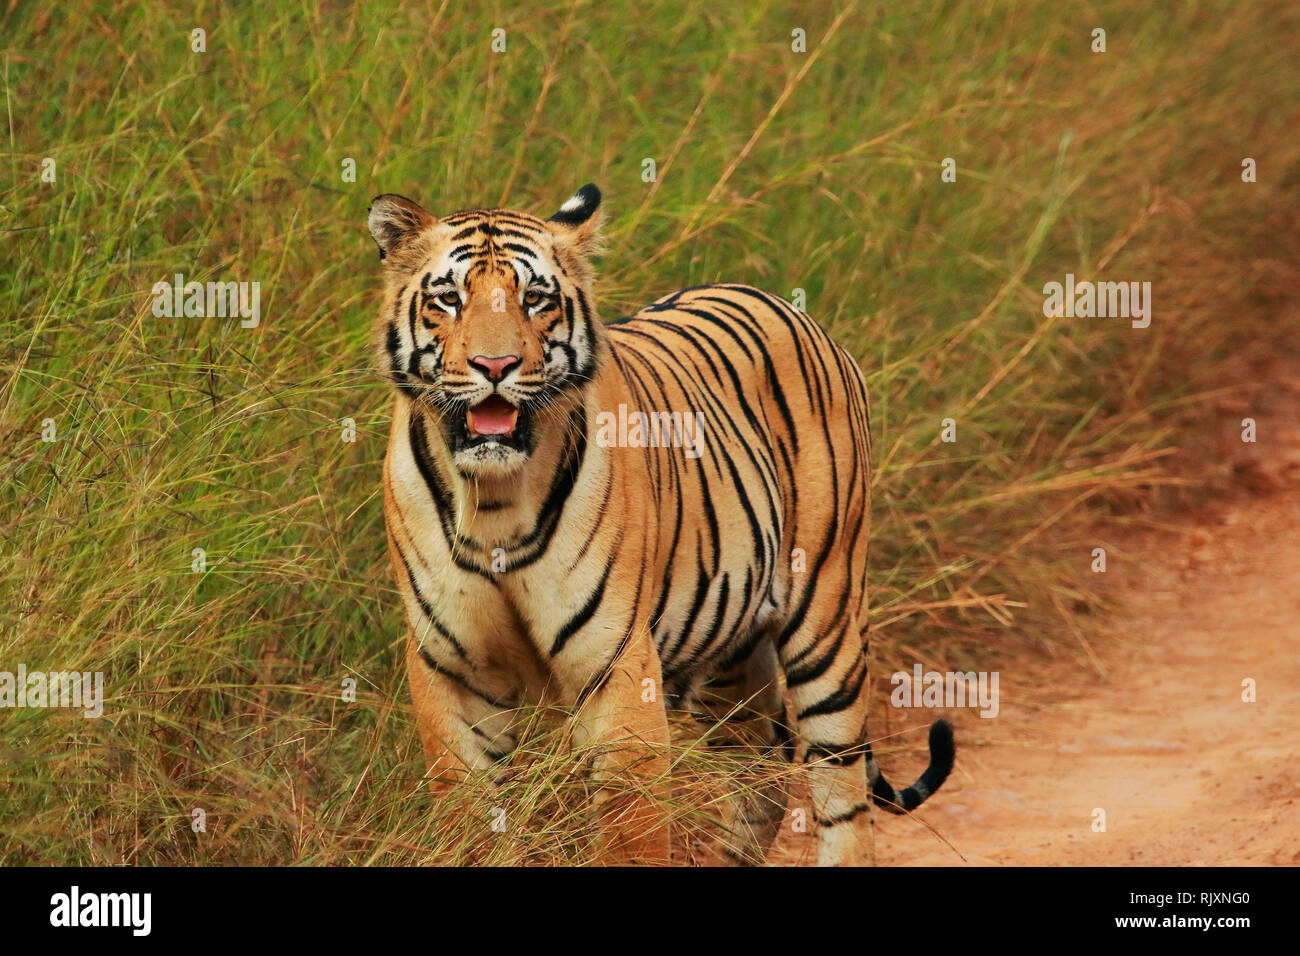 Tiger, Panthera tigris, Parc National de Tadoba, Maharashtra, Inde Banque D'Images